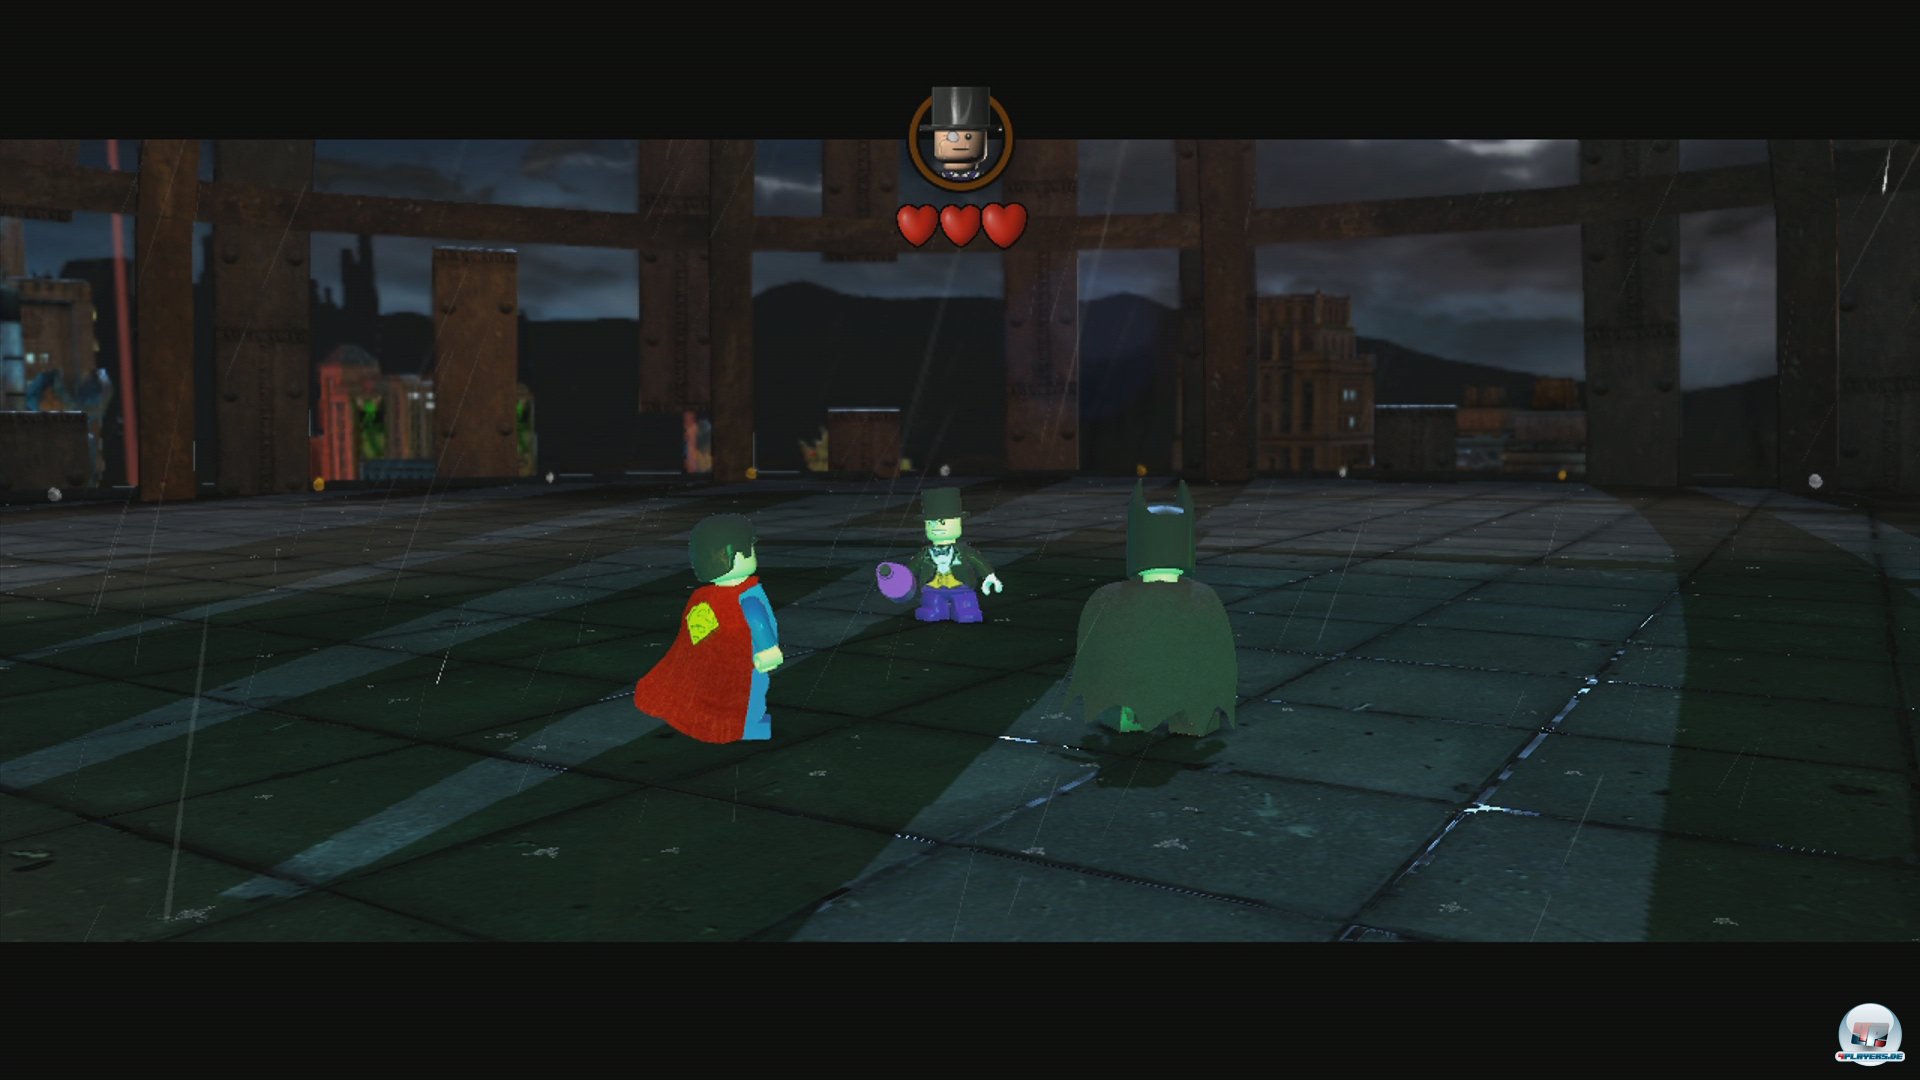 Im Vergleich zum letzten Lego-Spiel auf Wii U fällt der Humor trotz Superhelden-Besetzung eher dürftig aus.